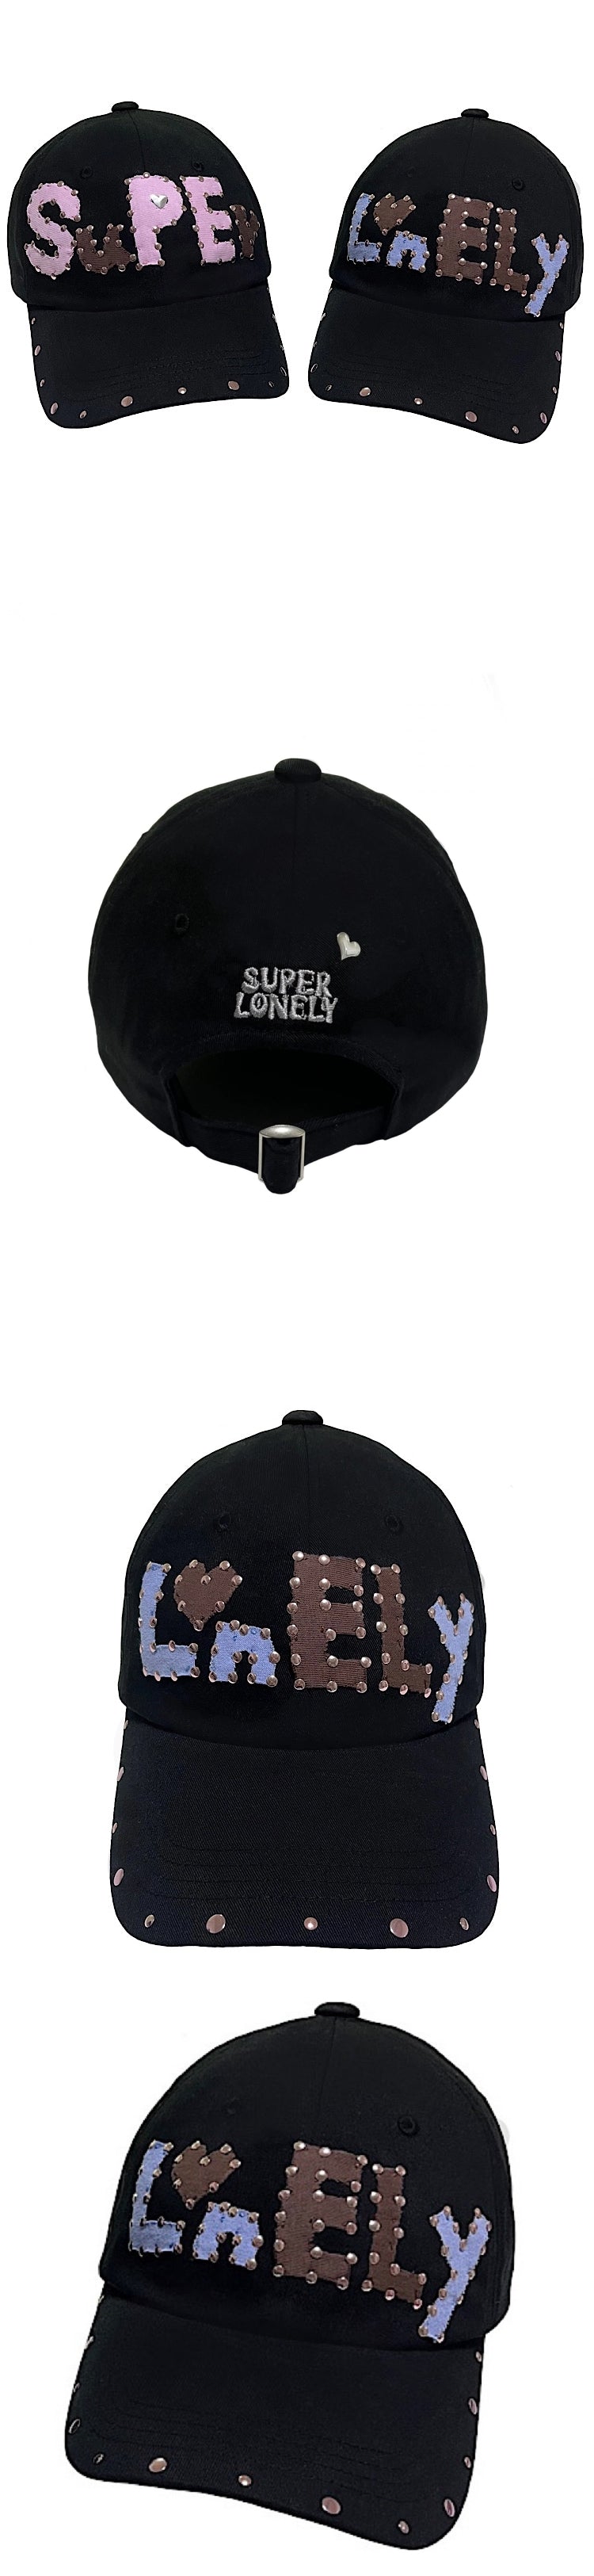 Lonely cap